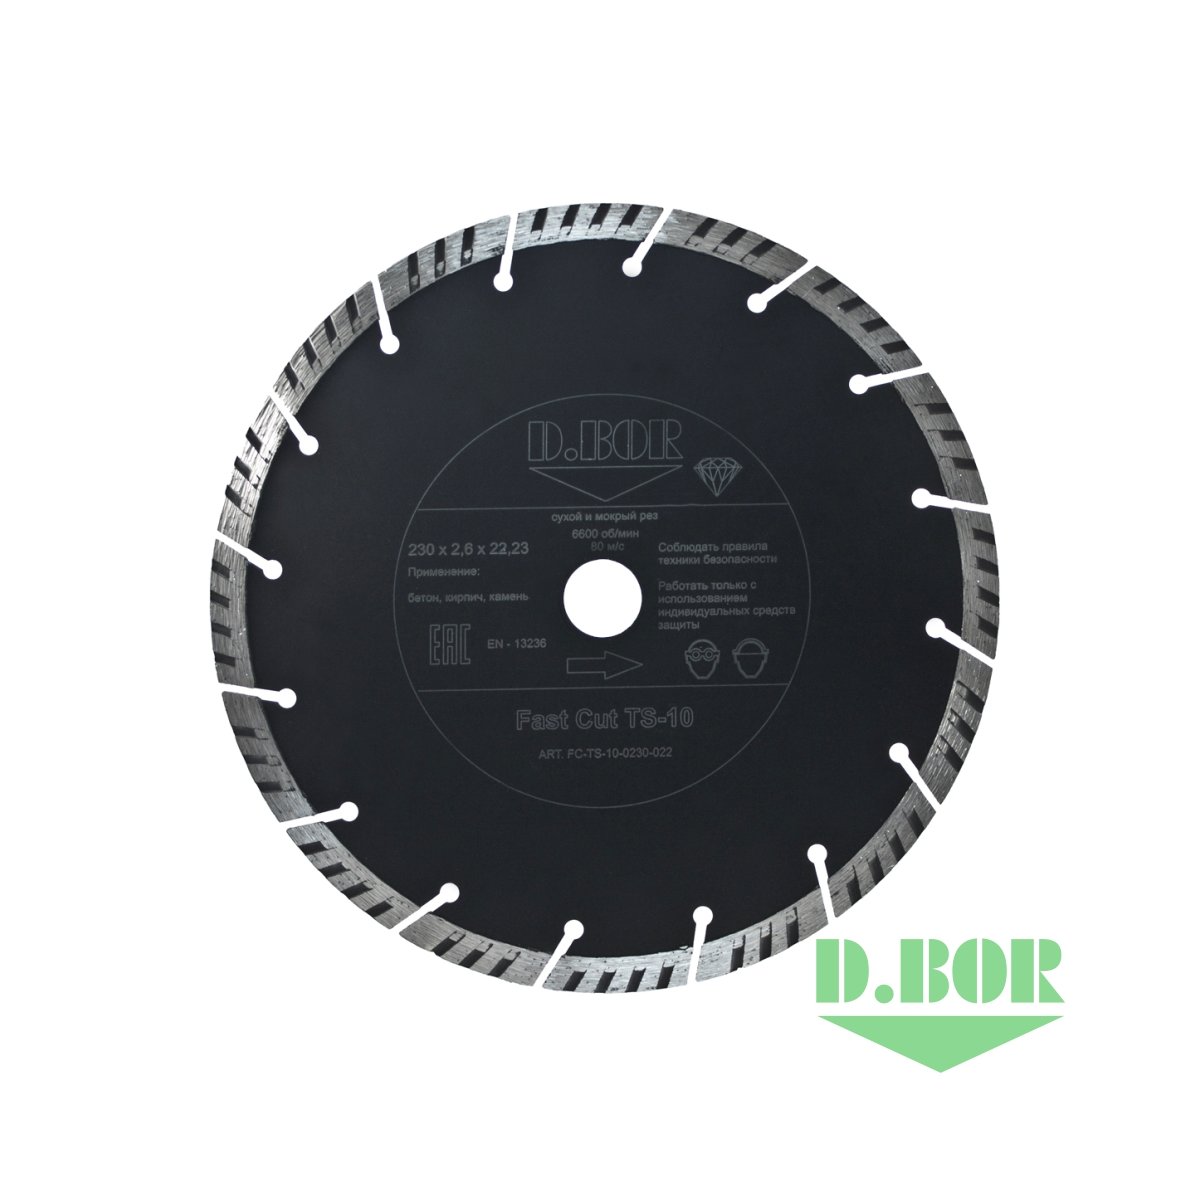 Алмазный диск Fast Cut TS-10, 230x2,6x22,23 (арт. FC-TS-10-0230-022) "D.BOR"